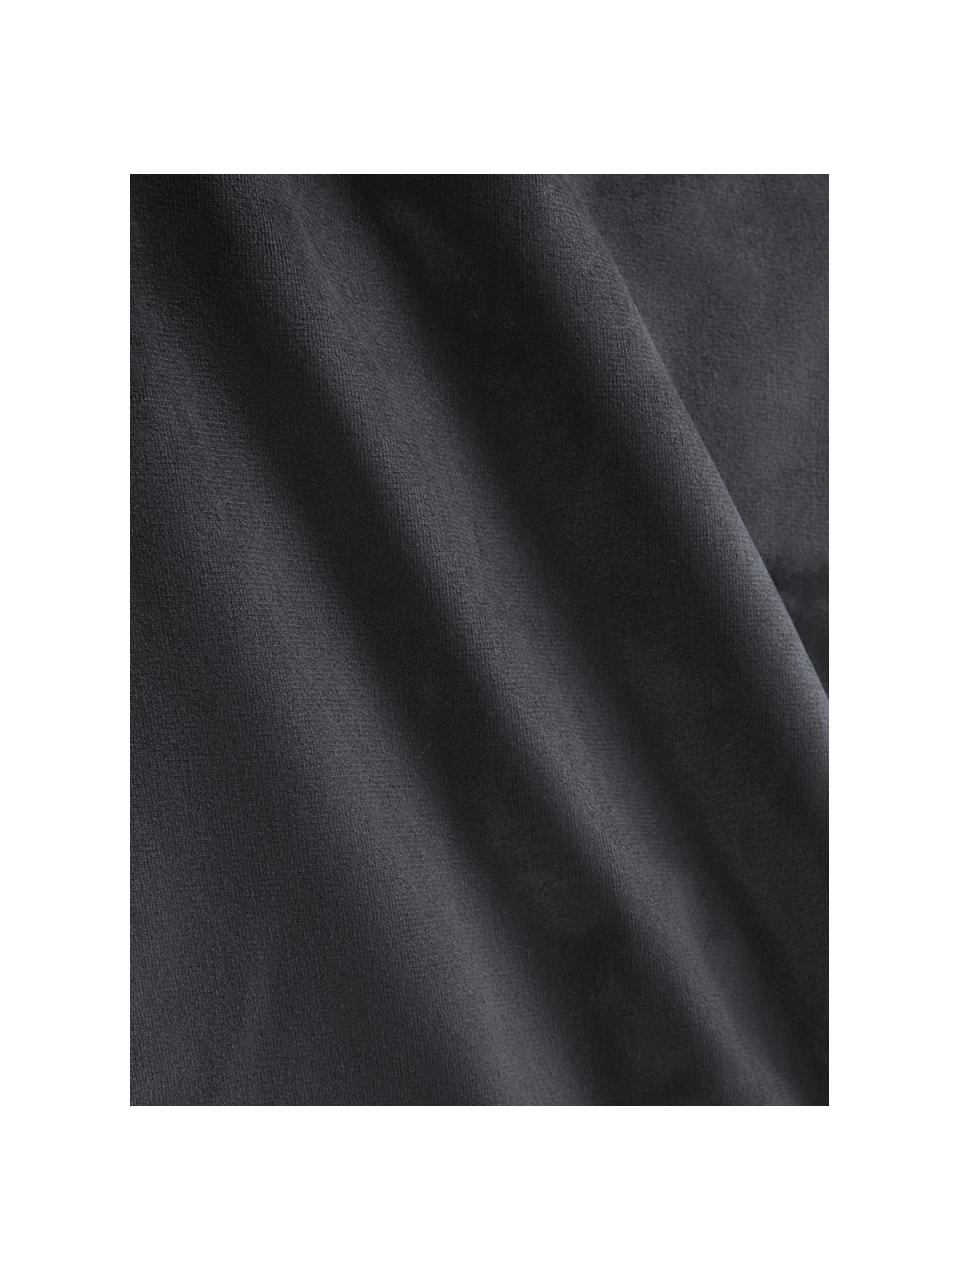 Funda de cojín bordada de terciopelo Caja, Terciopelo de poliéster, Gris oscuro, An 30 x L 50 cm